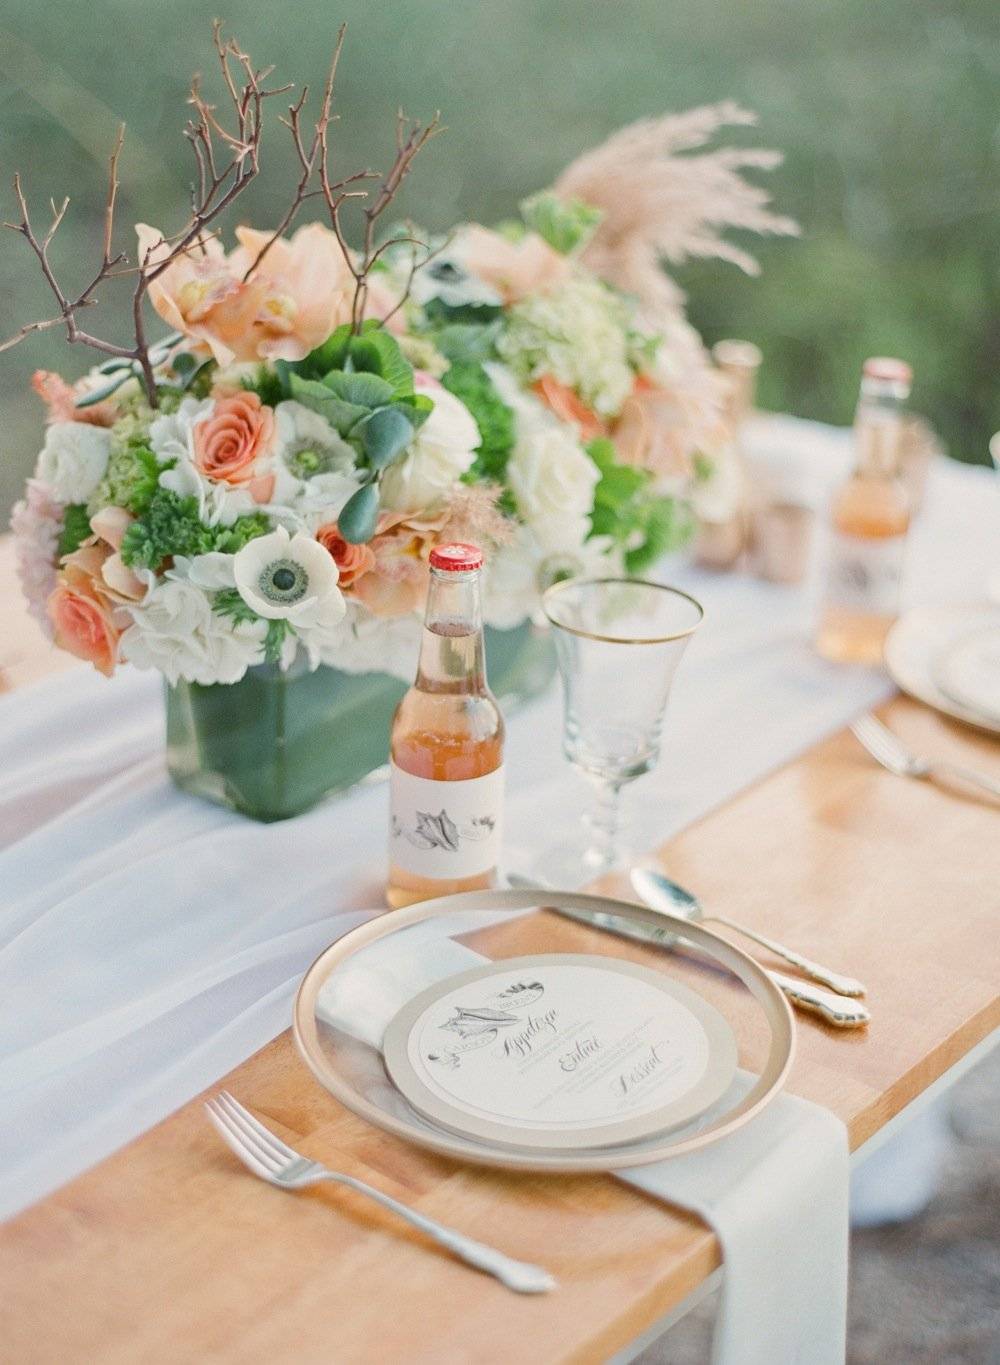 Персиковая свадьба – оформление зала, выбор аксессуаров